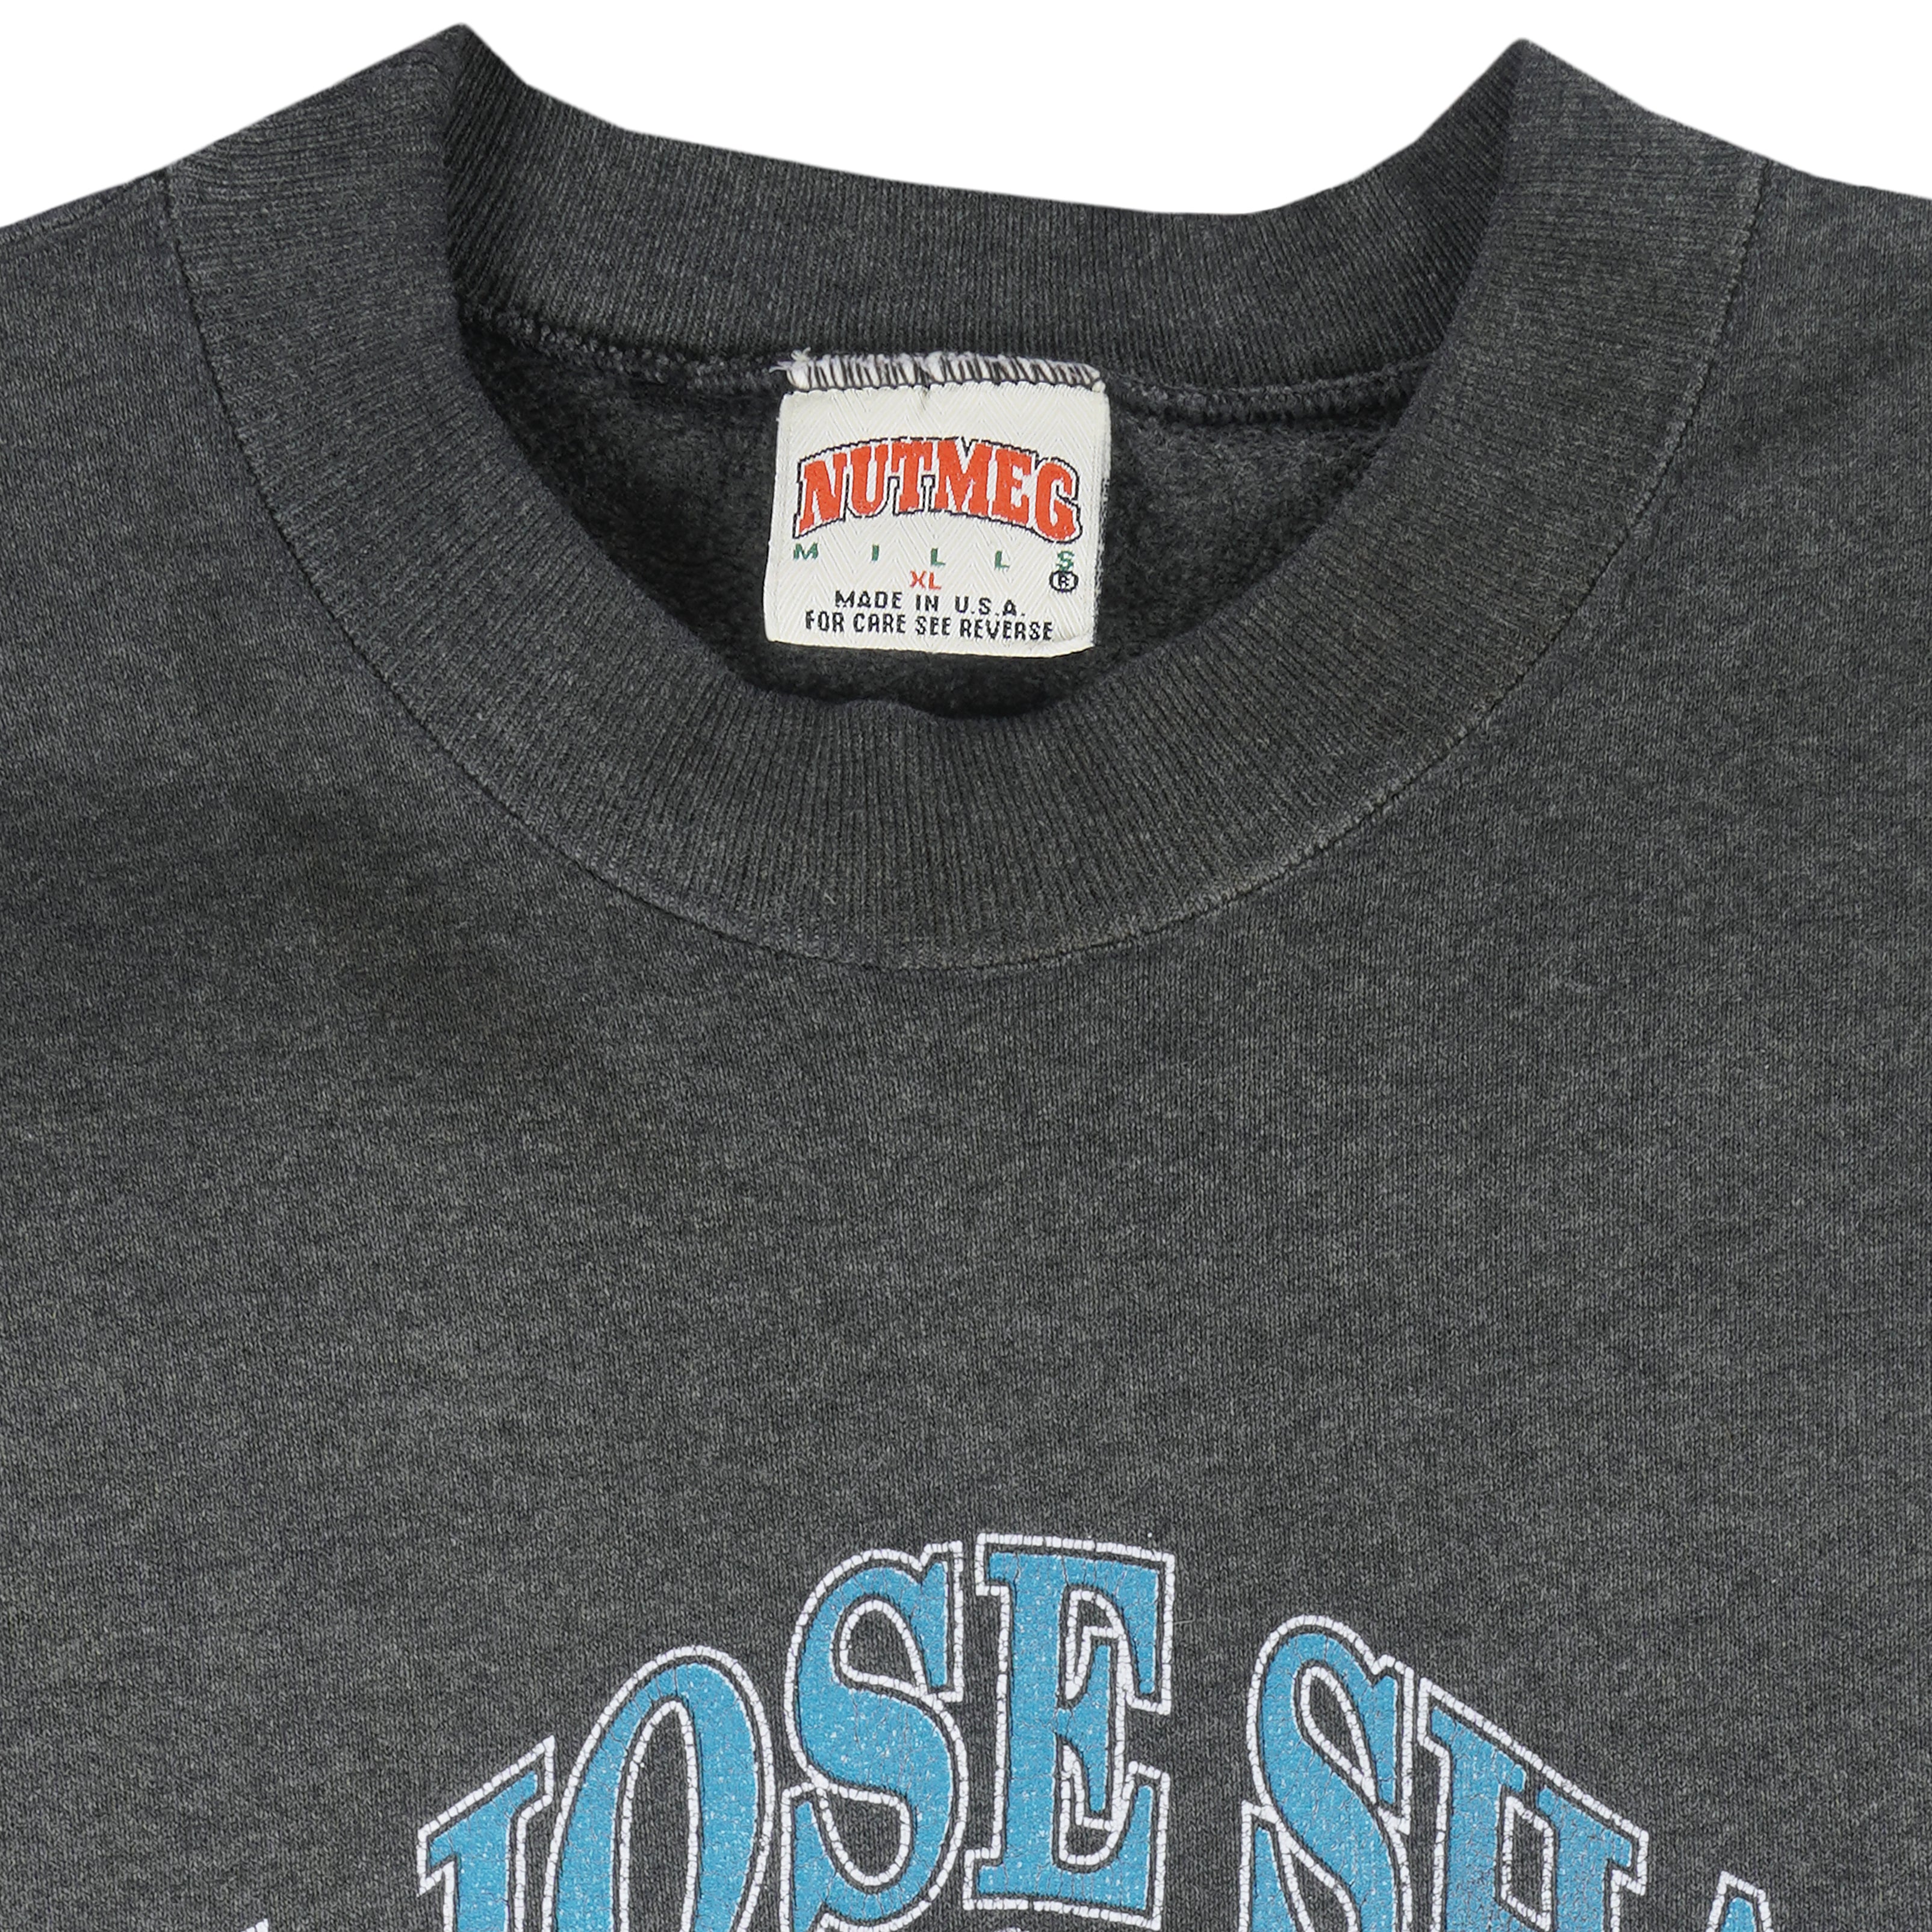 Vintage 90s Saint Louis Blues Sweatshirt Nutmeg Mills Size Medium